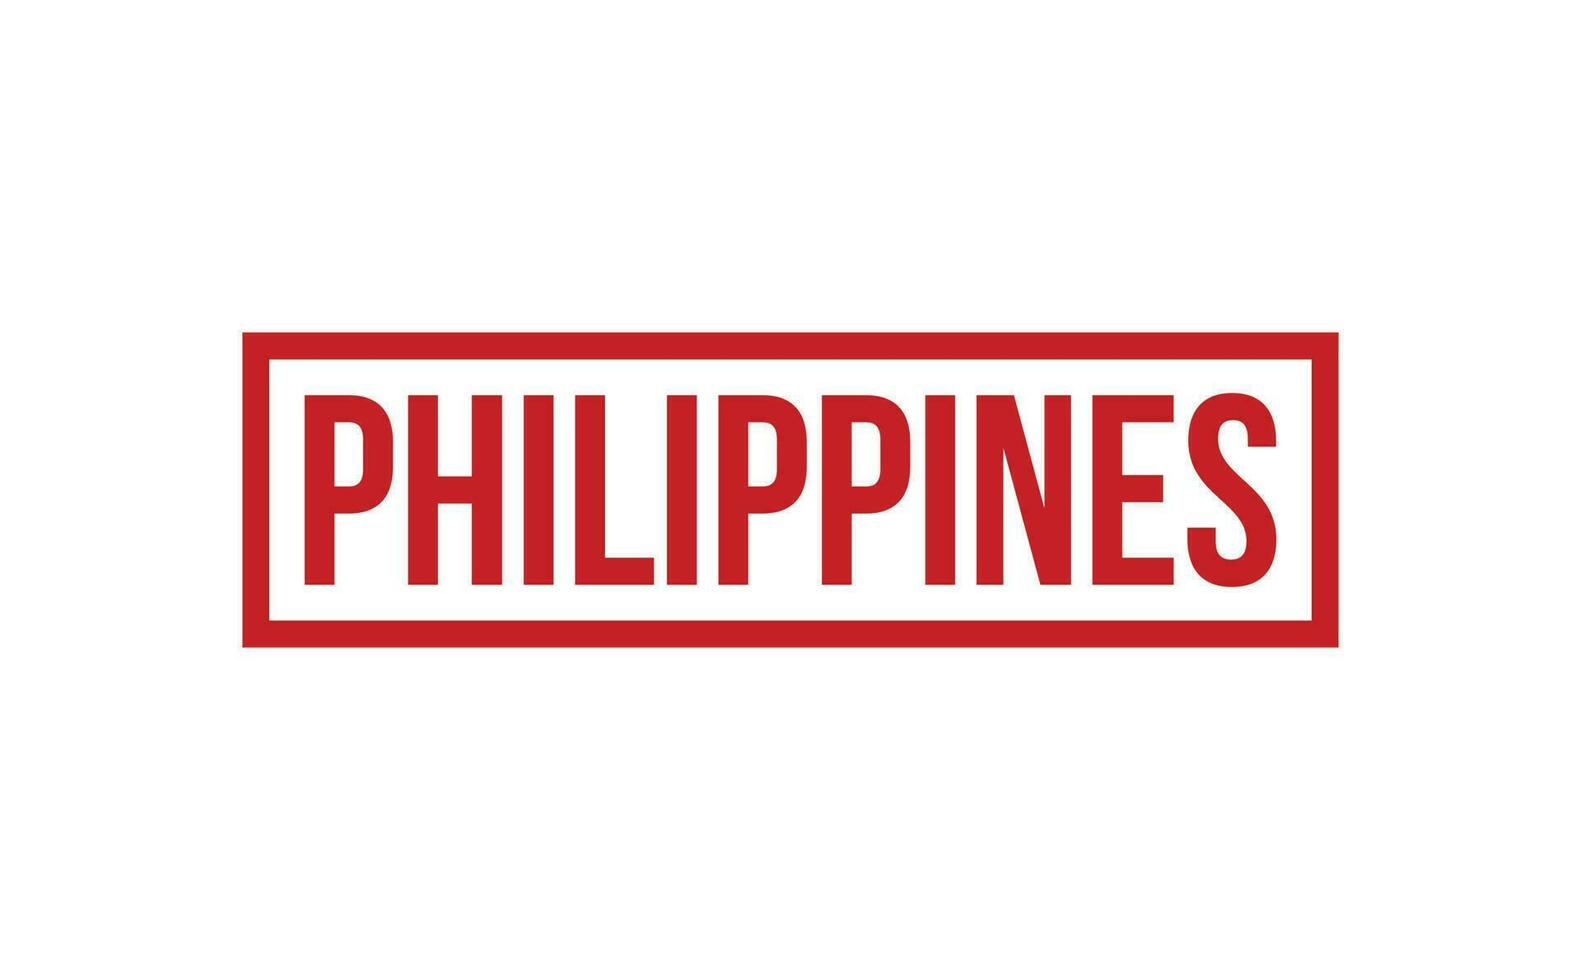 Filipinas caucho sello sello vector